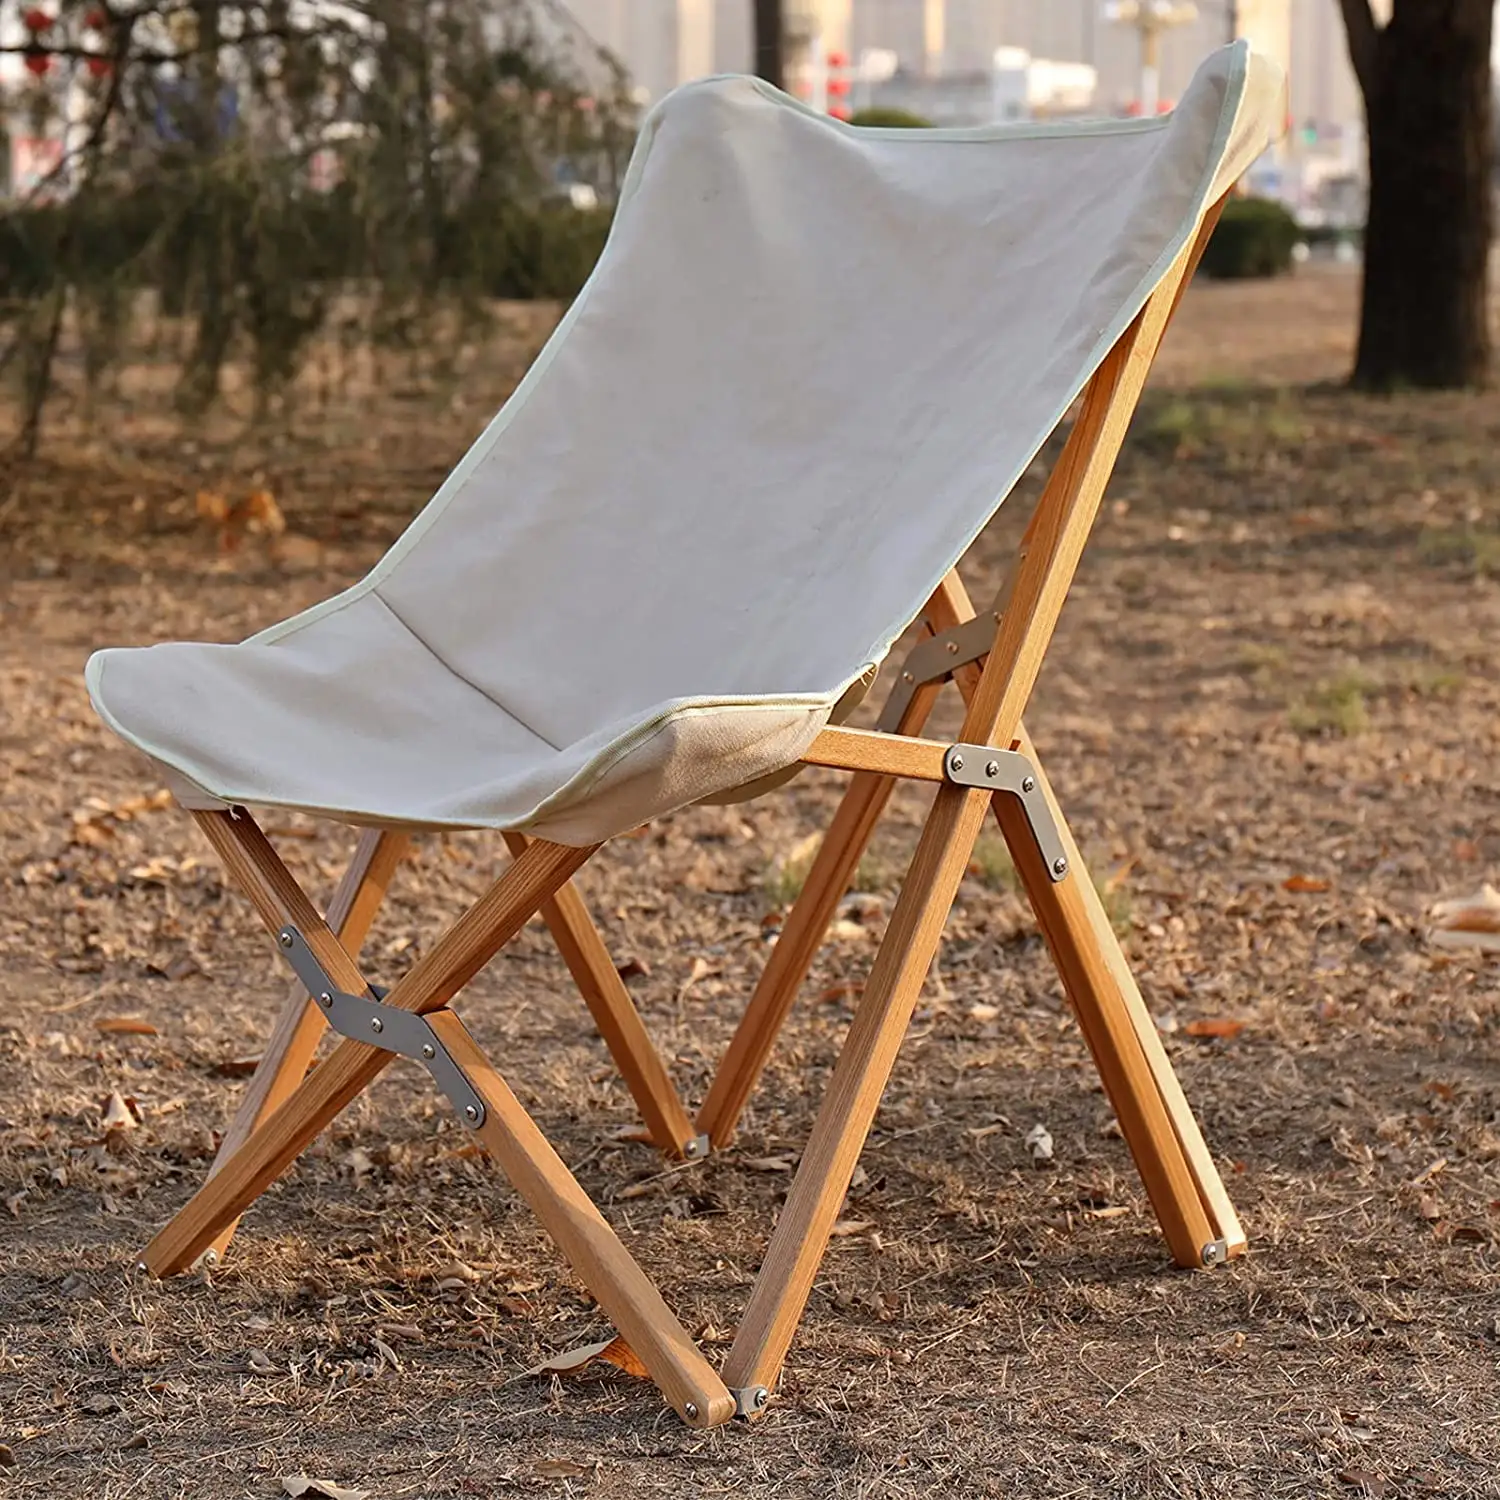 2021 في الهواء الطلق الأخشاب ريدج إطار الحبوب خشبية قابلة للطي قماش قابل للطي التخييم كرسي خشب